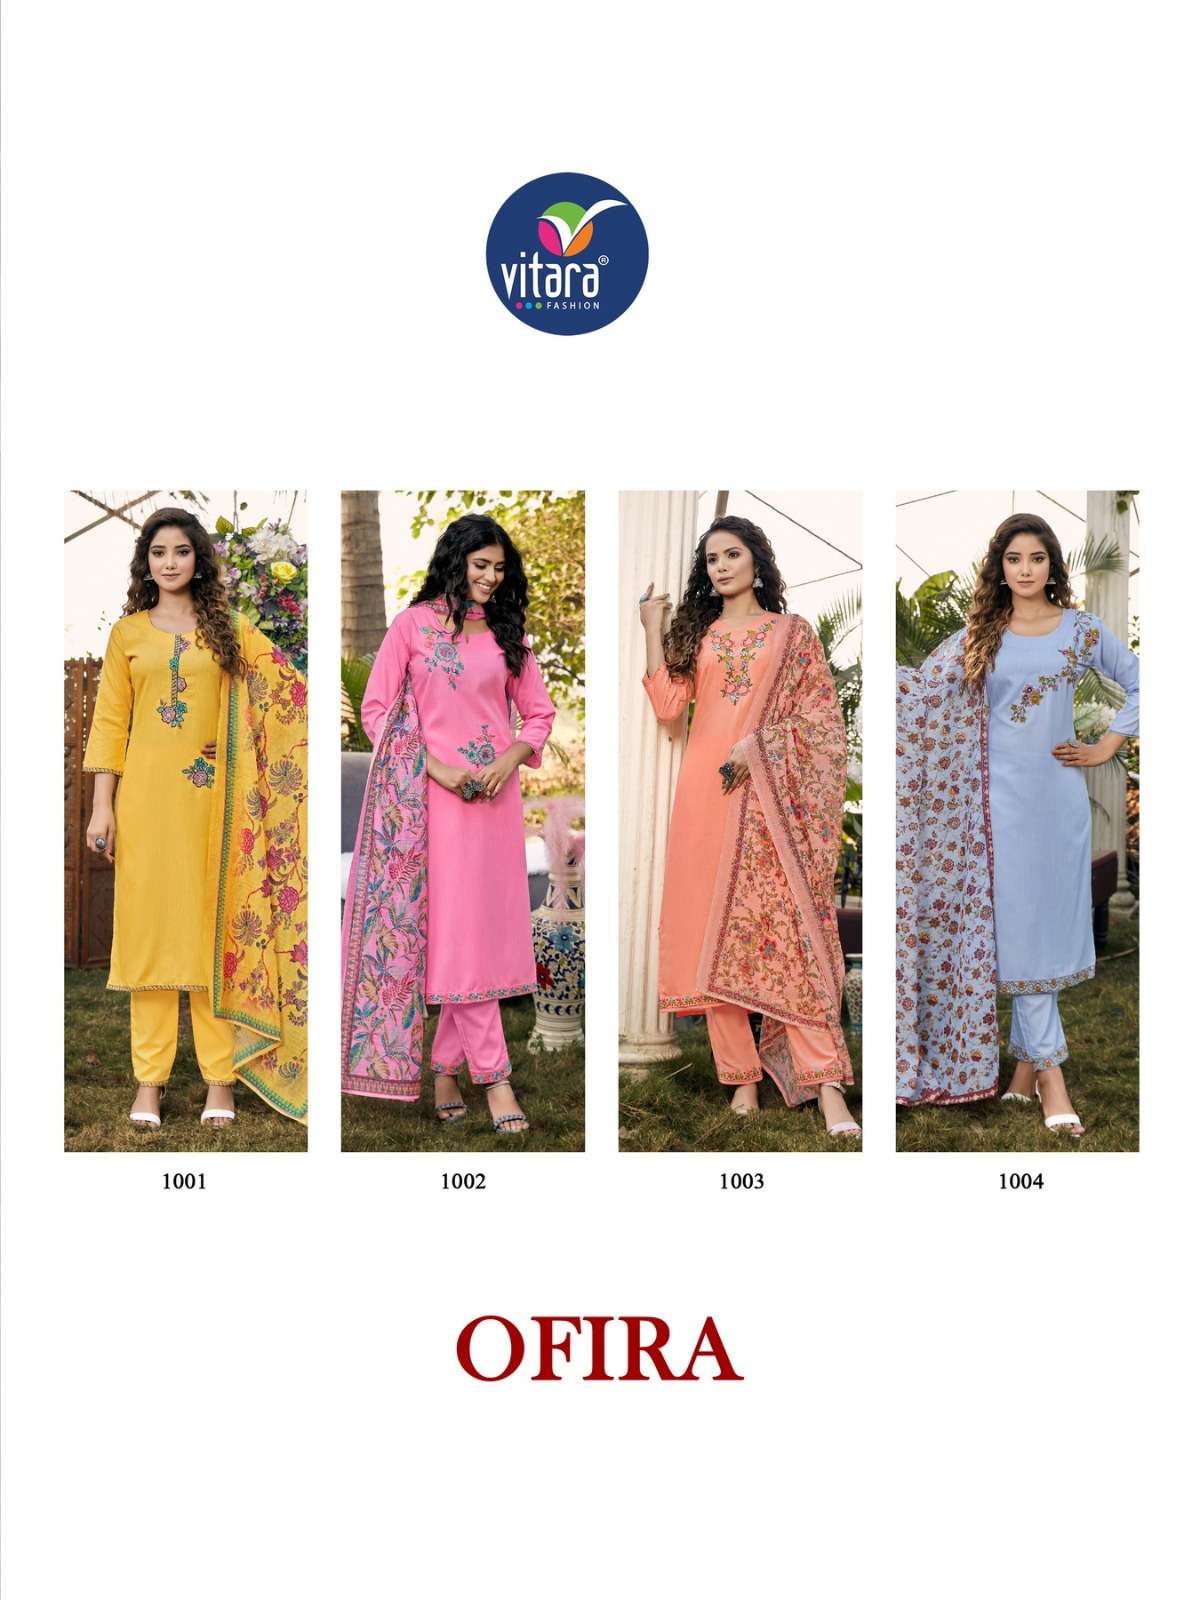 vitara fashion ofira 1001-1004 series tesla cotton embroidered kurtis bottom dupatta set surat